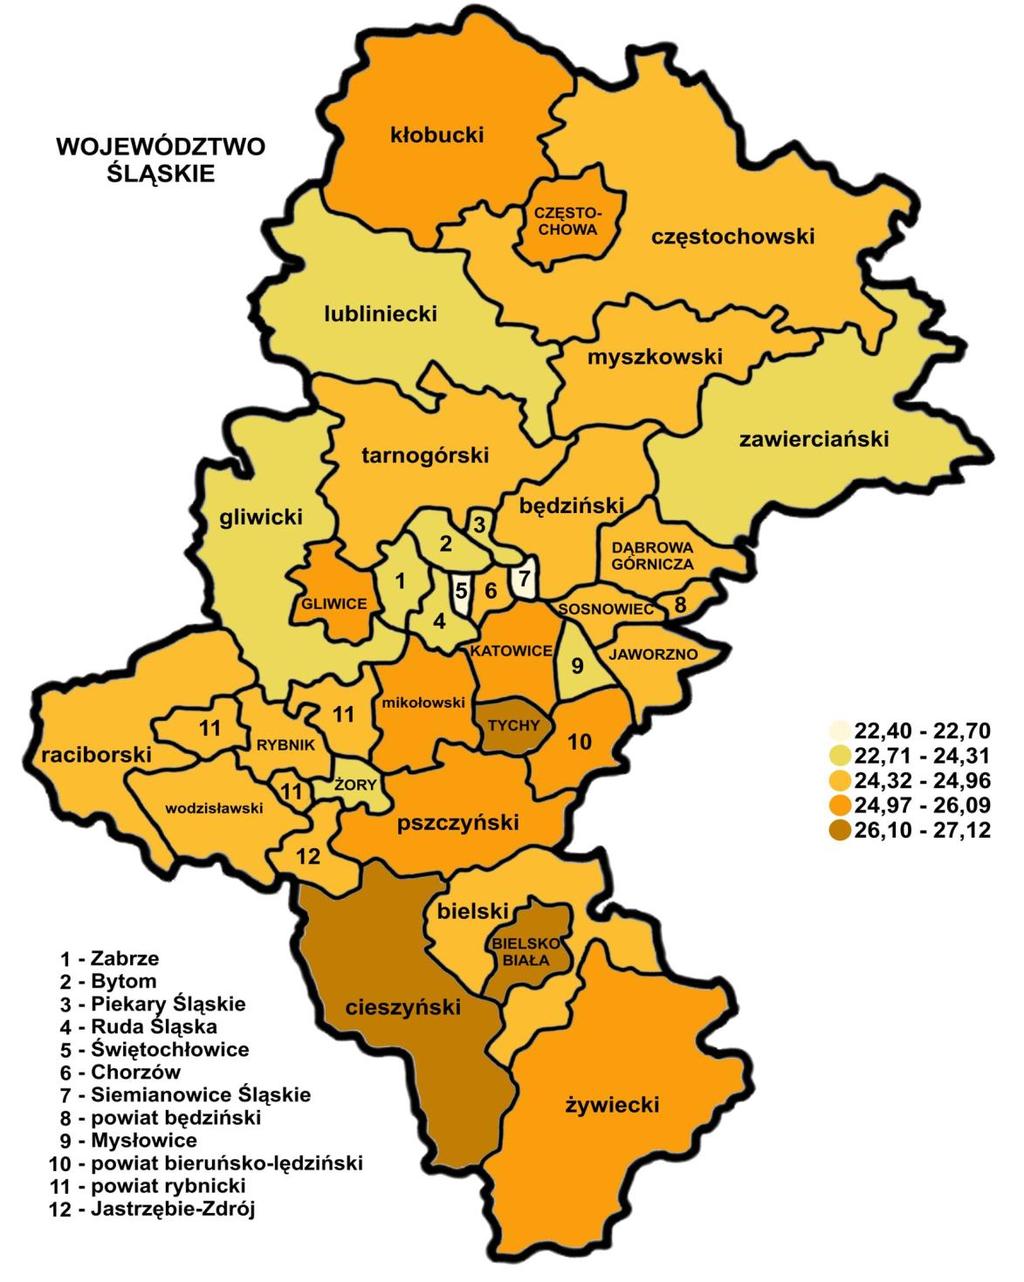 3.3. Wyniki sprawdzianu w powiatach Zamieszczona poniżej mapa konturowa województwa śląskiego pokazuje terytorialne zróżnicowanie (w poszczególnych powiatach) wyników sprawdzianu.